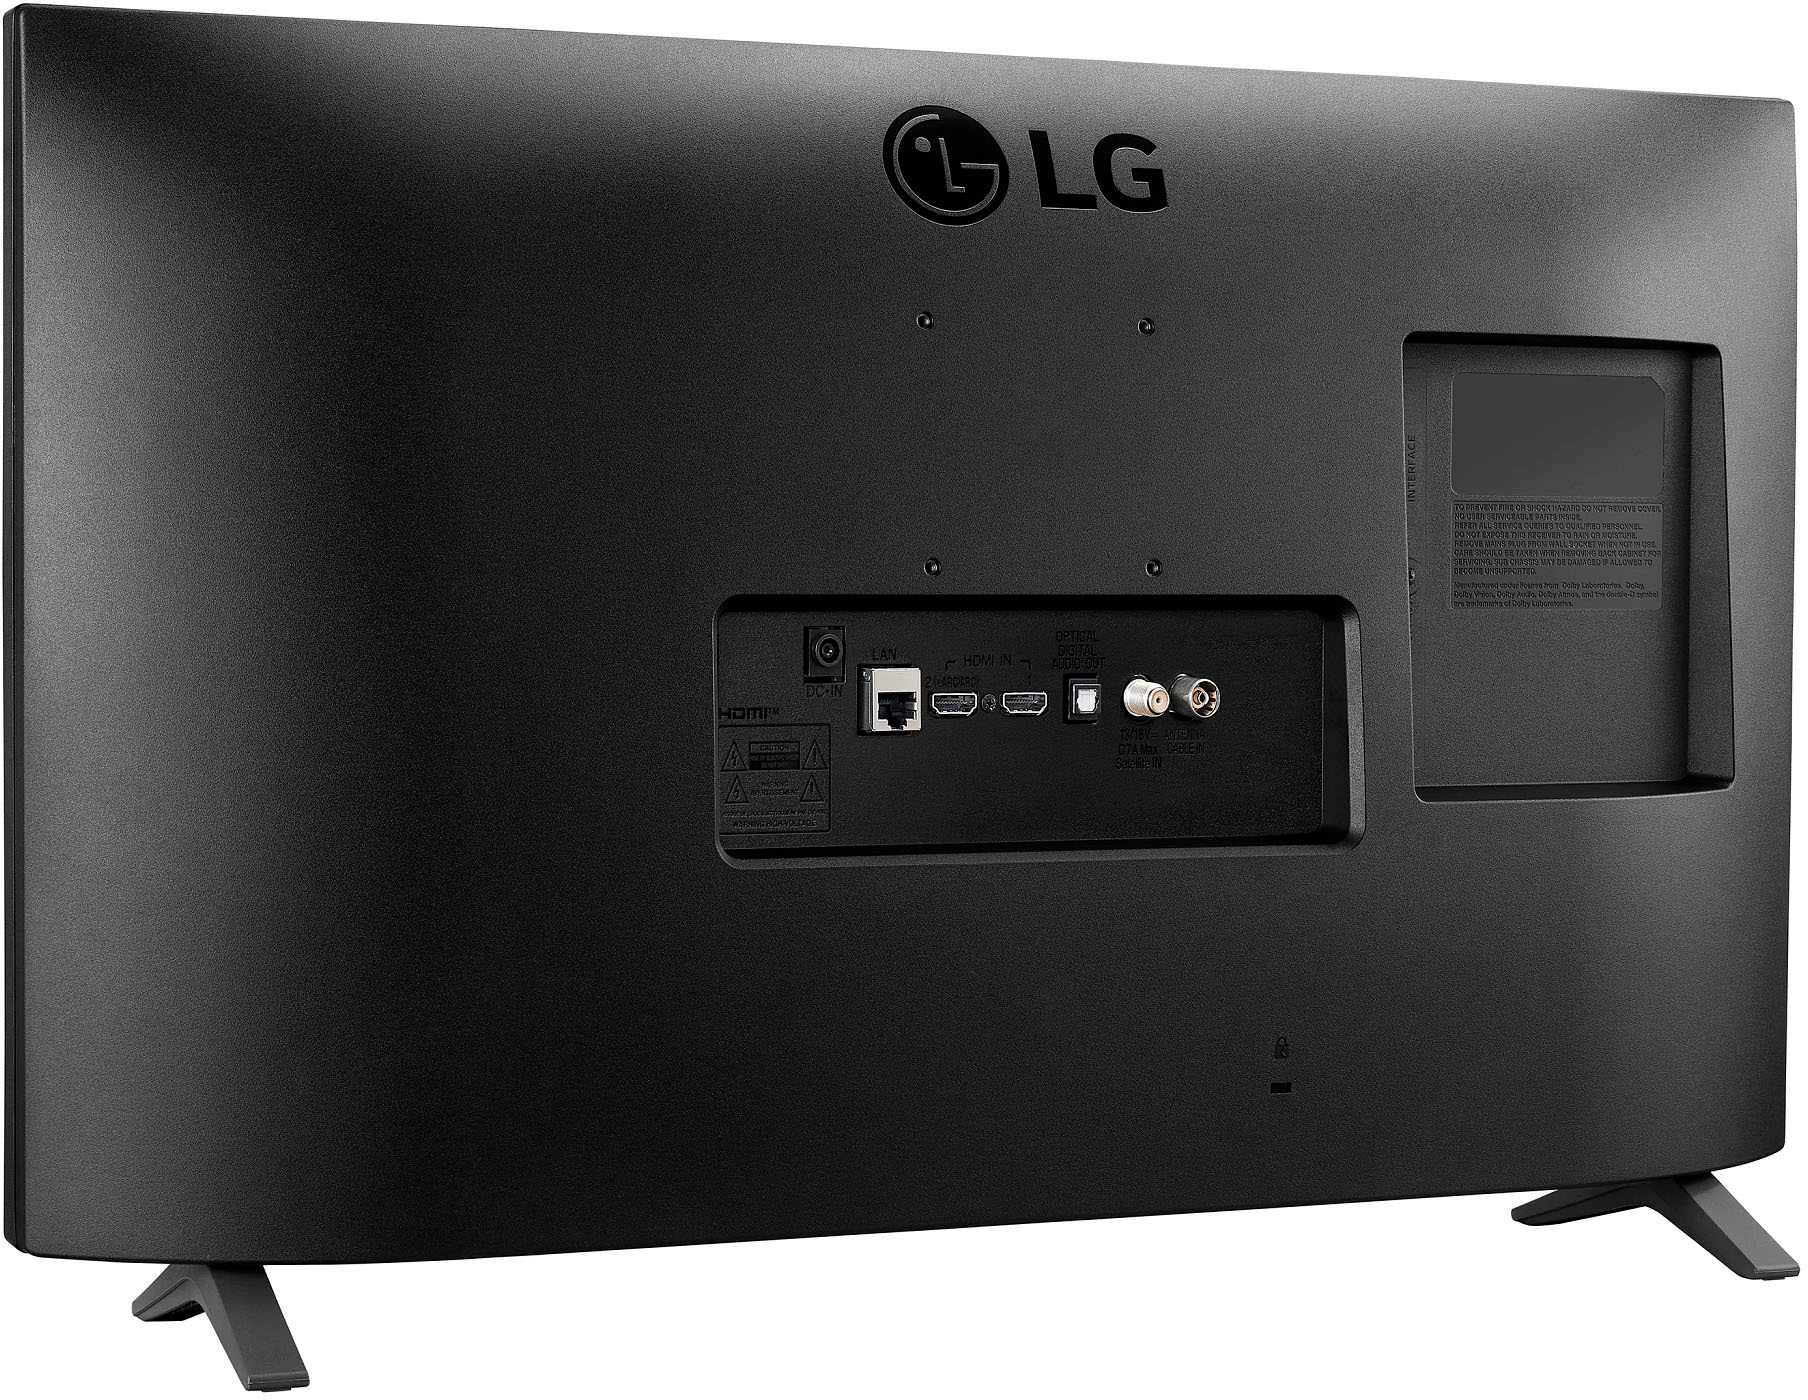 LG TV Monitor 28”, HD, con HDMI